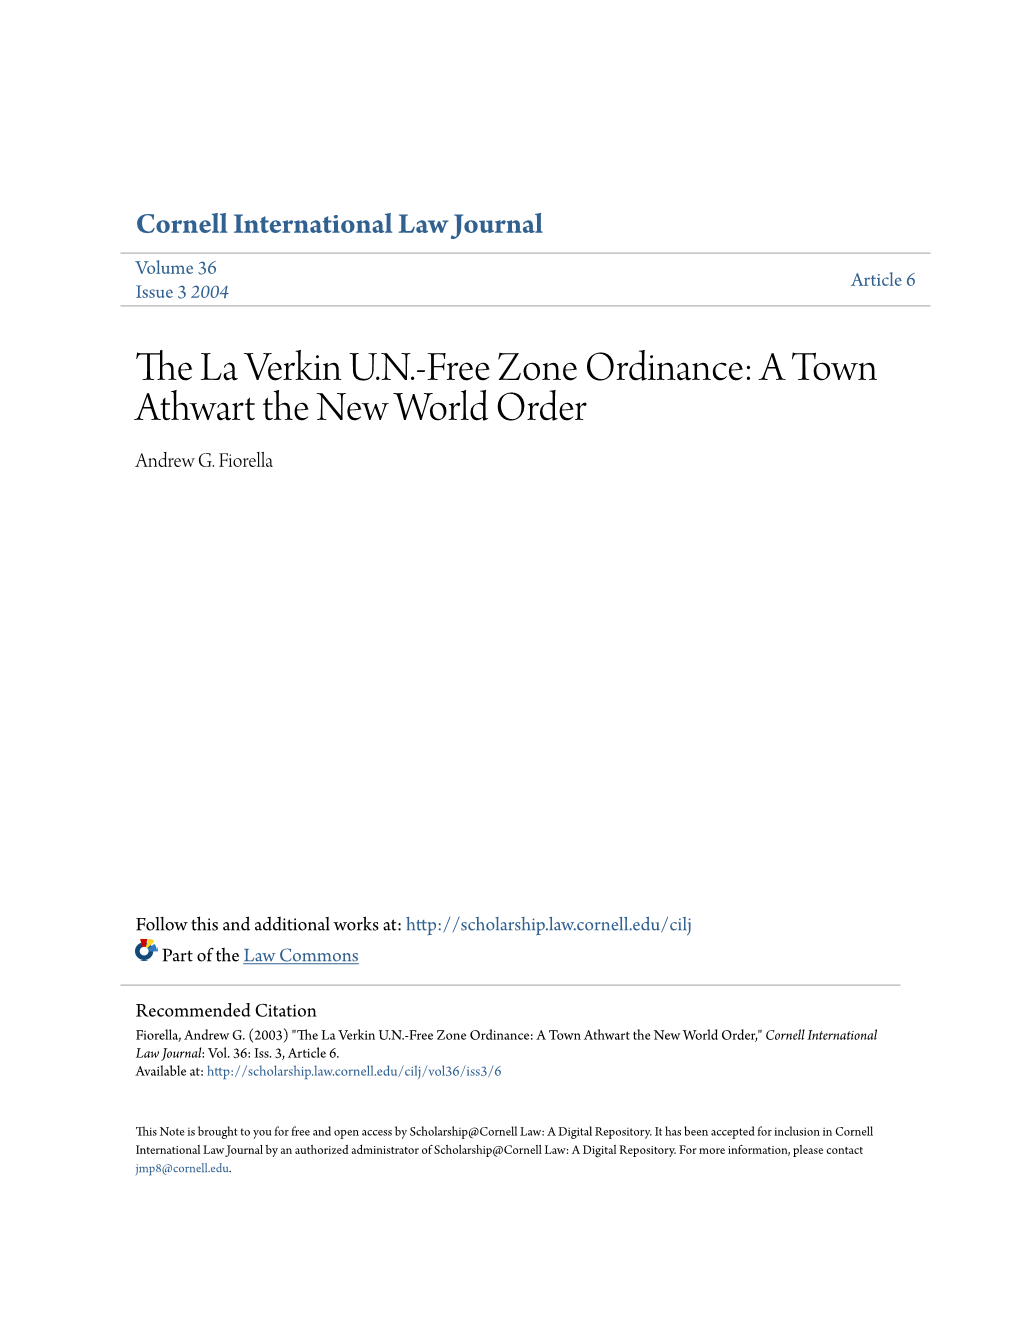 The La Verkin UN-Free Zone Ordinance